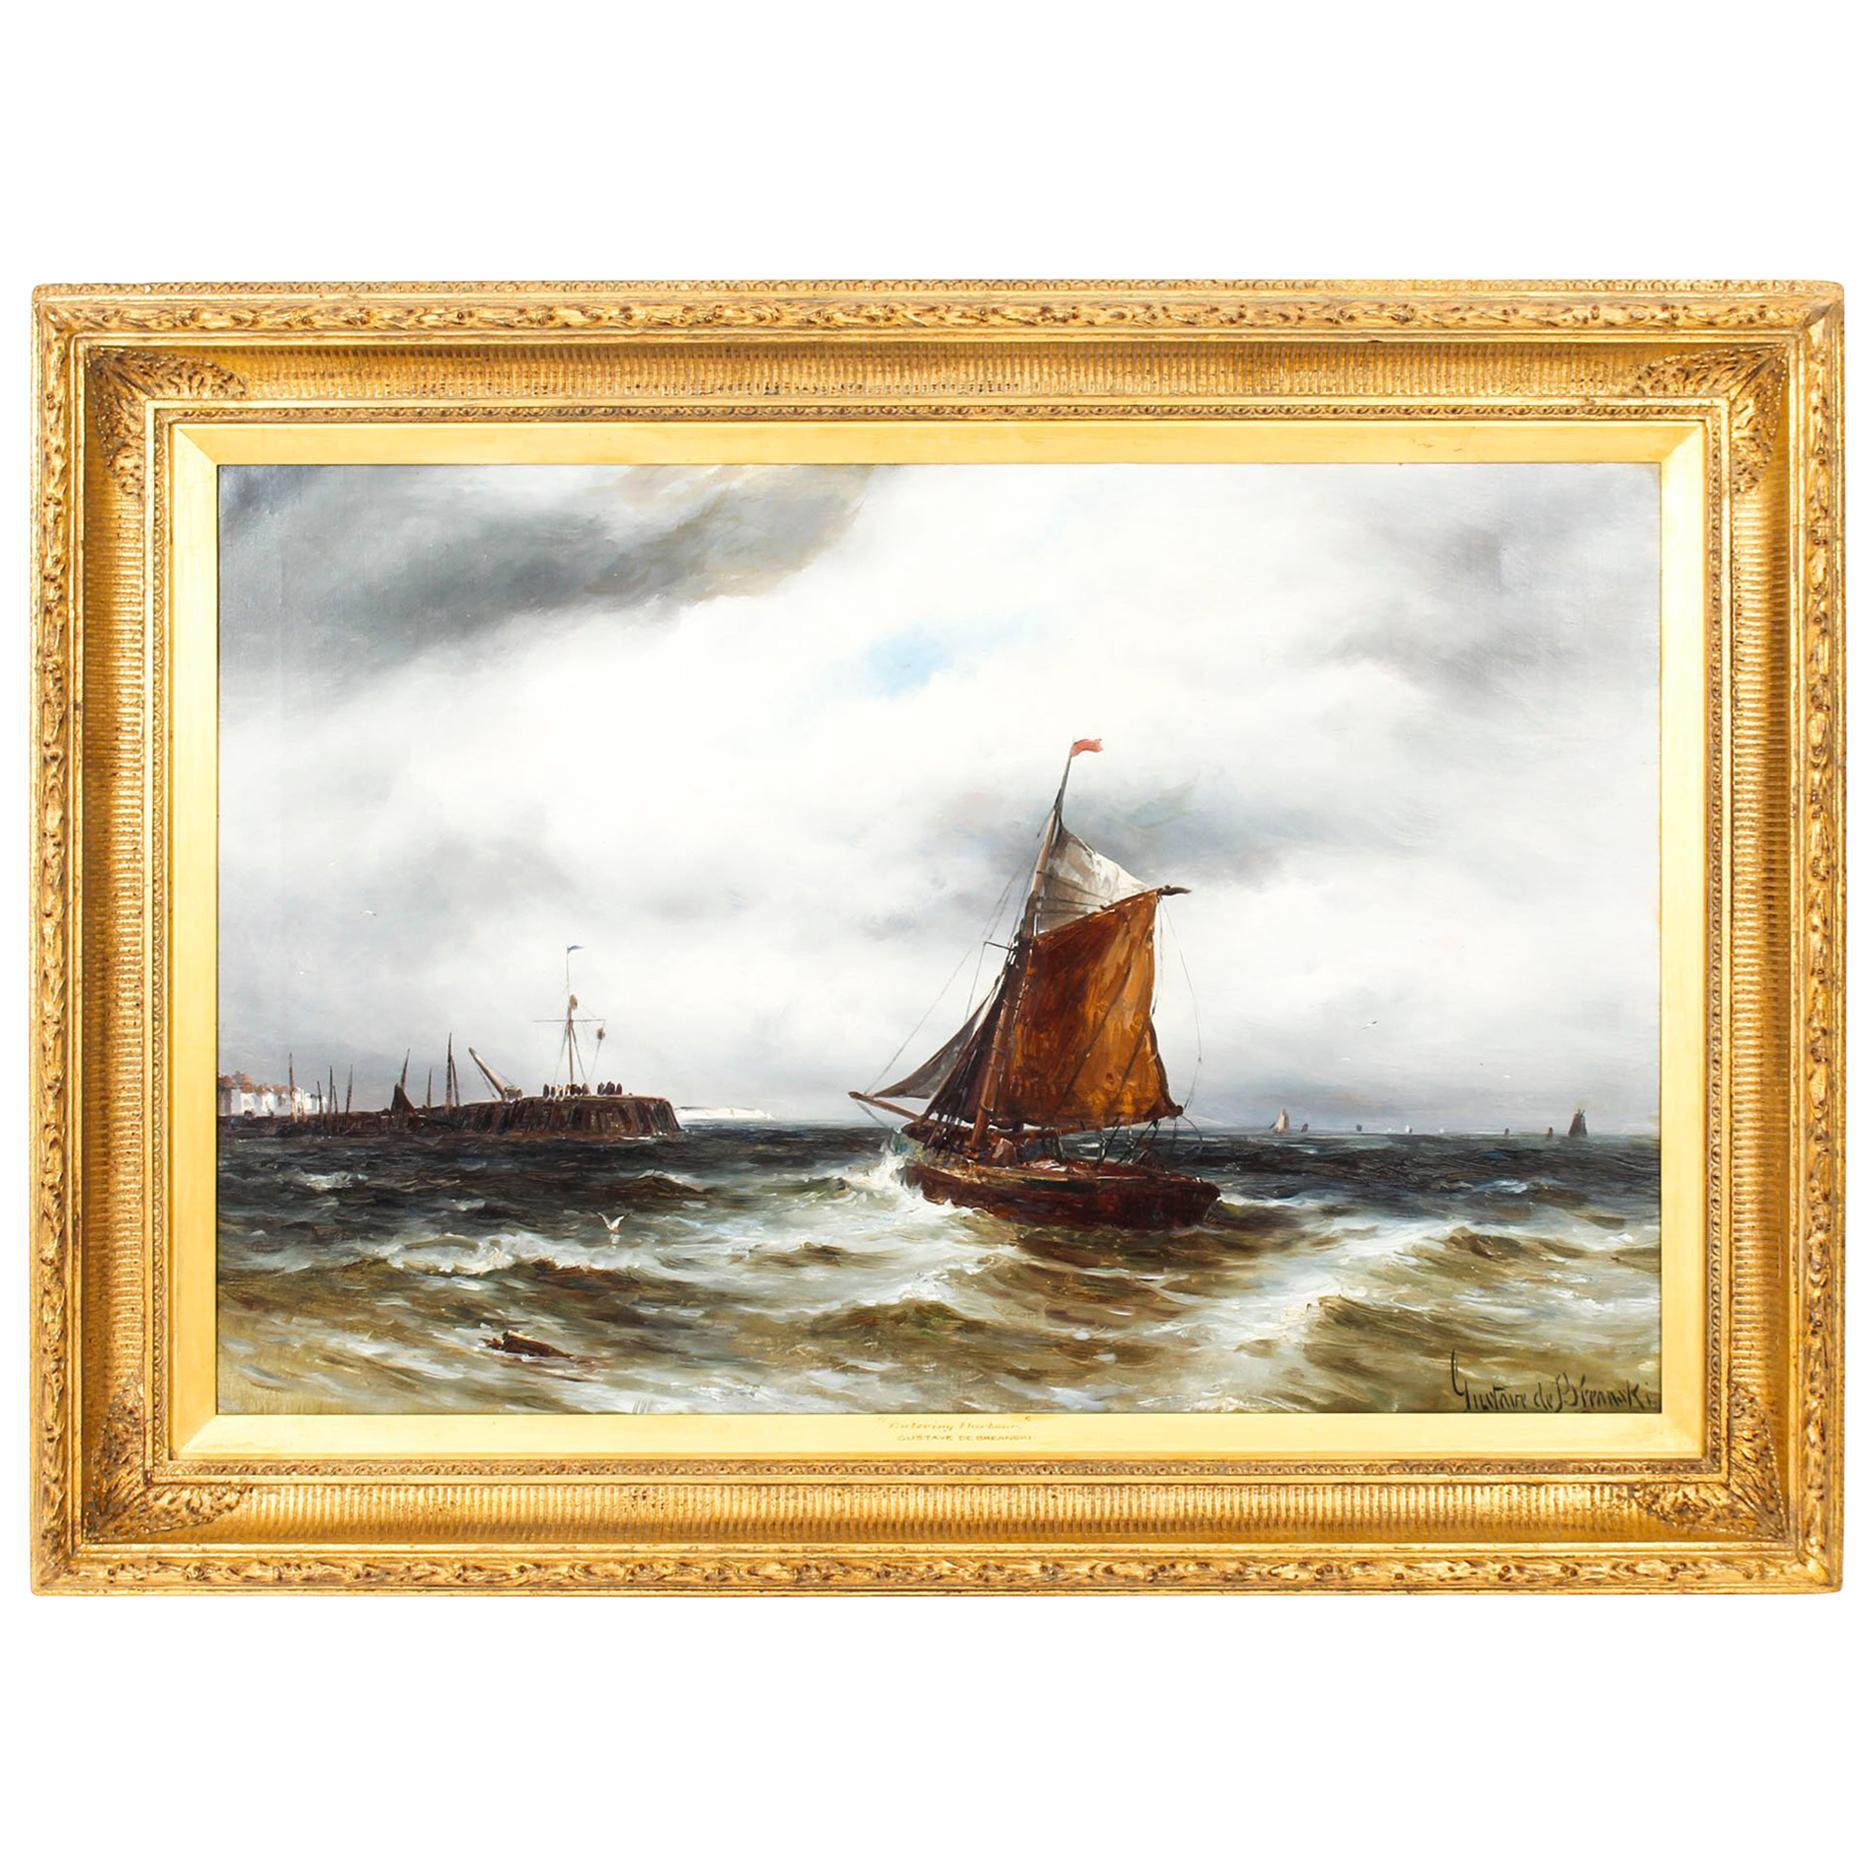 Antique Oil on Canvas Seascape Painting Gustave De Bréanski 19th Century